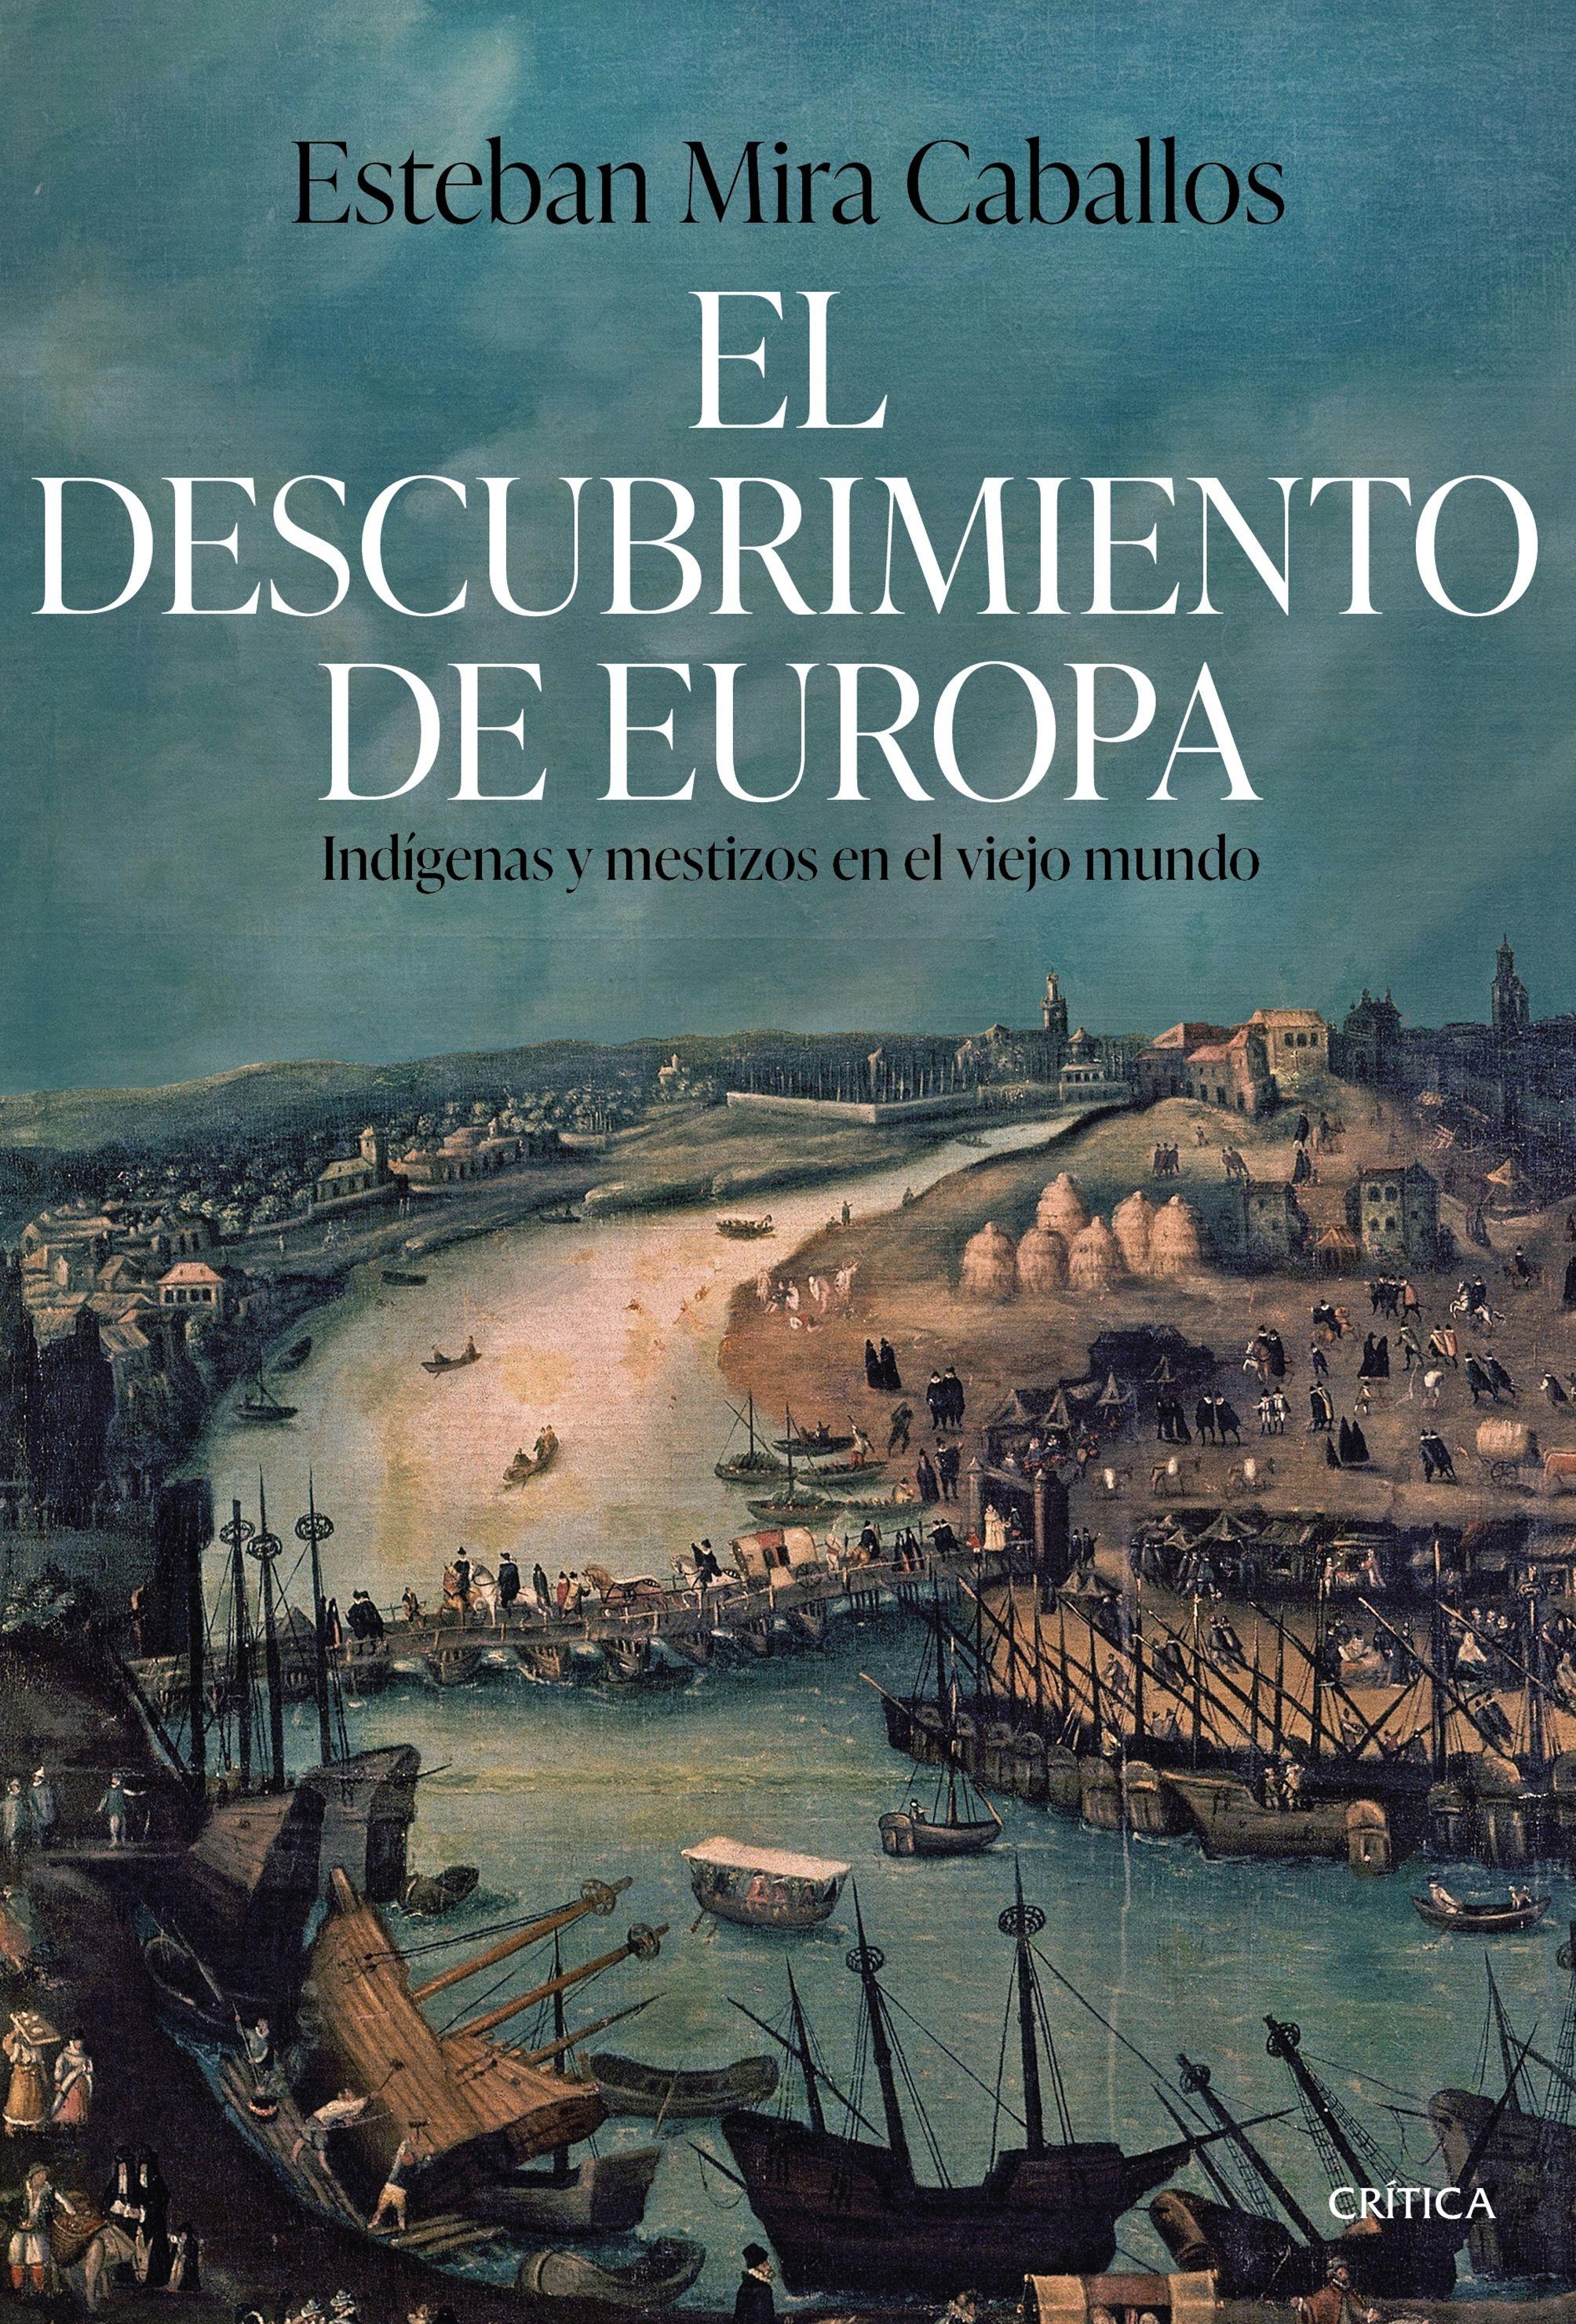 Descubrimiento de Europa, El "Indígenas y mestizos en el Viejo Mundo"